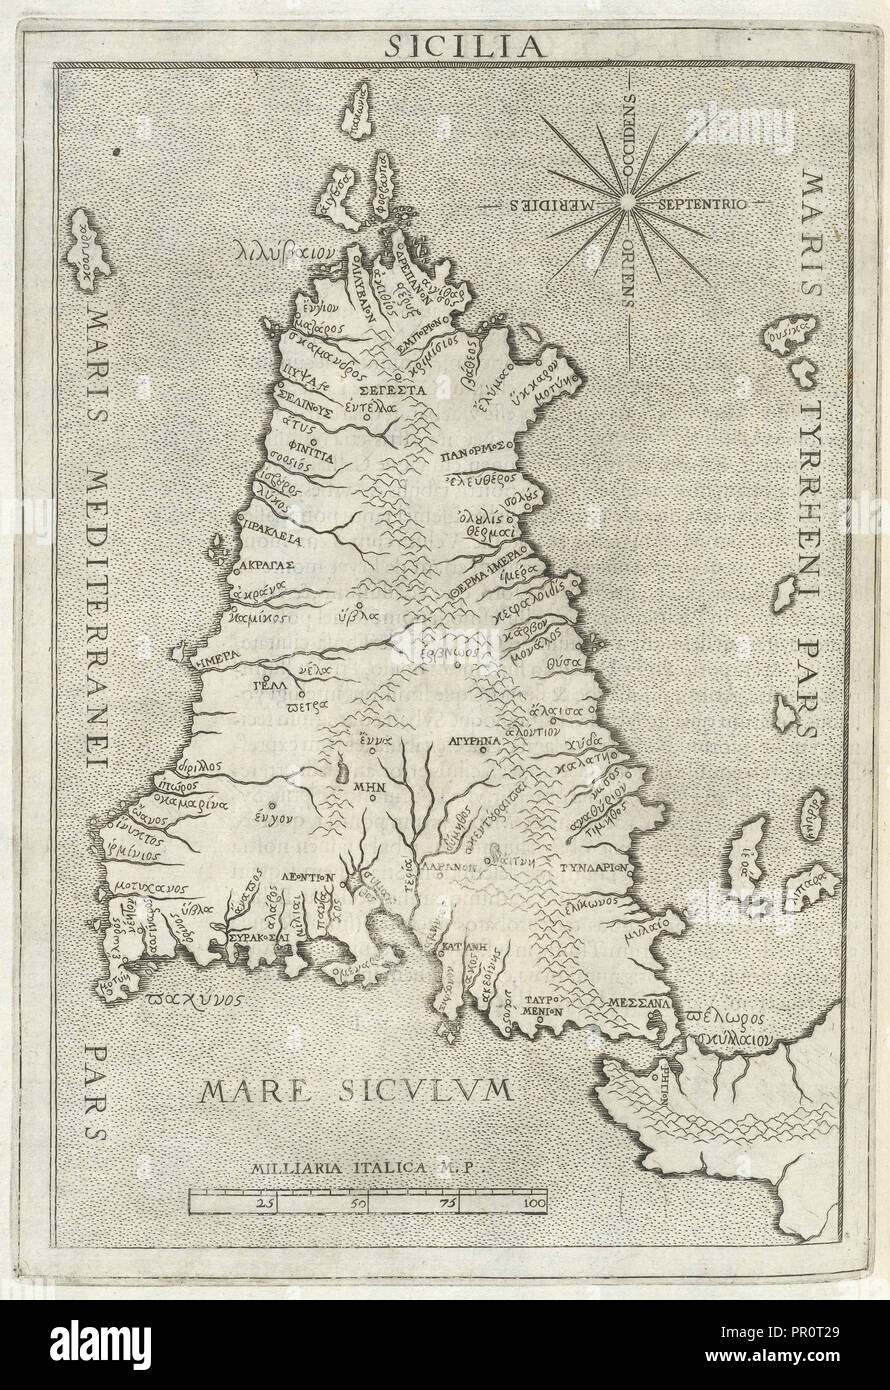 Map of Sicily, Sicilia et magna Graecia, siue, Historiae vrbium et populorum Graeciae ex antiquis nomismatibus liber primus Stock Photo